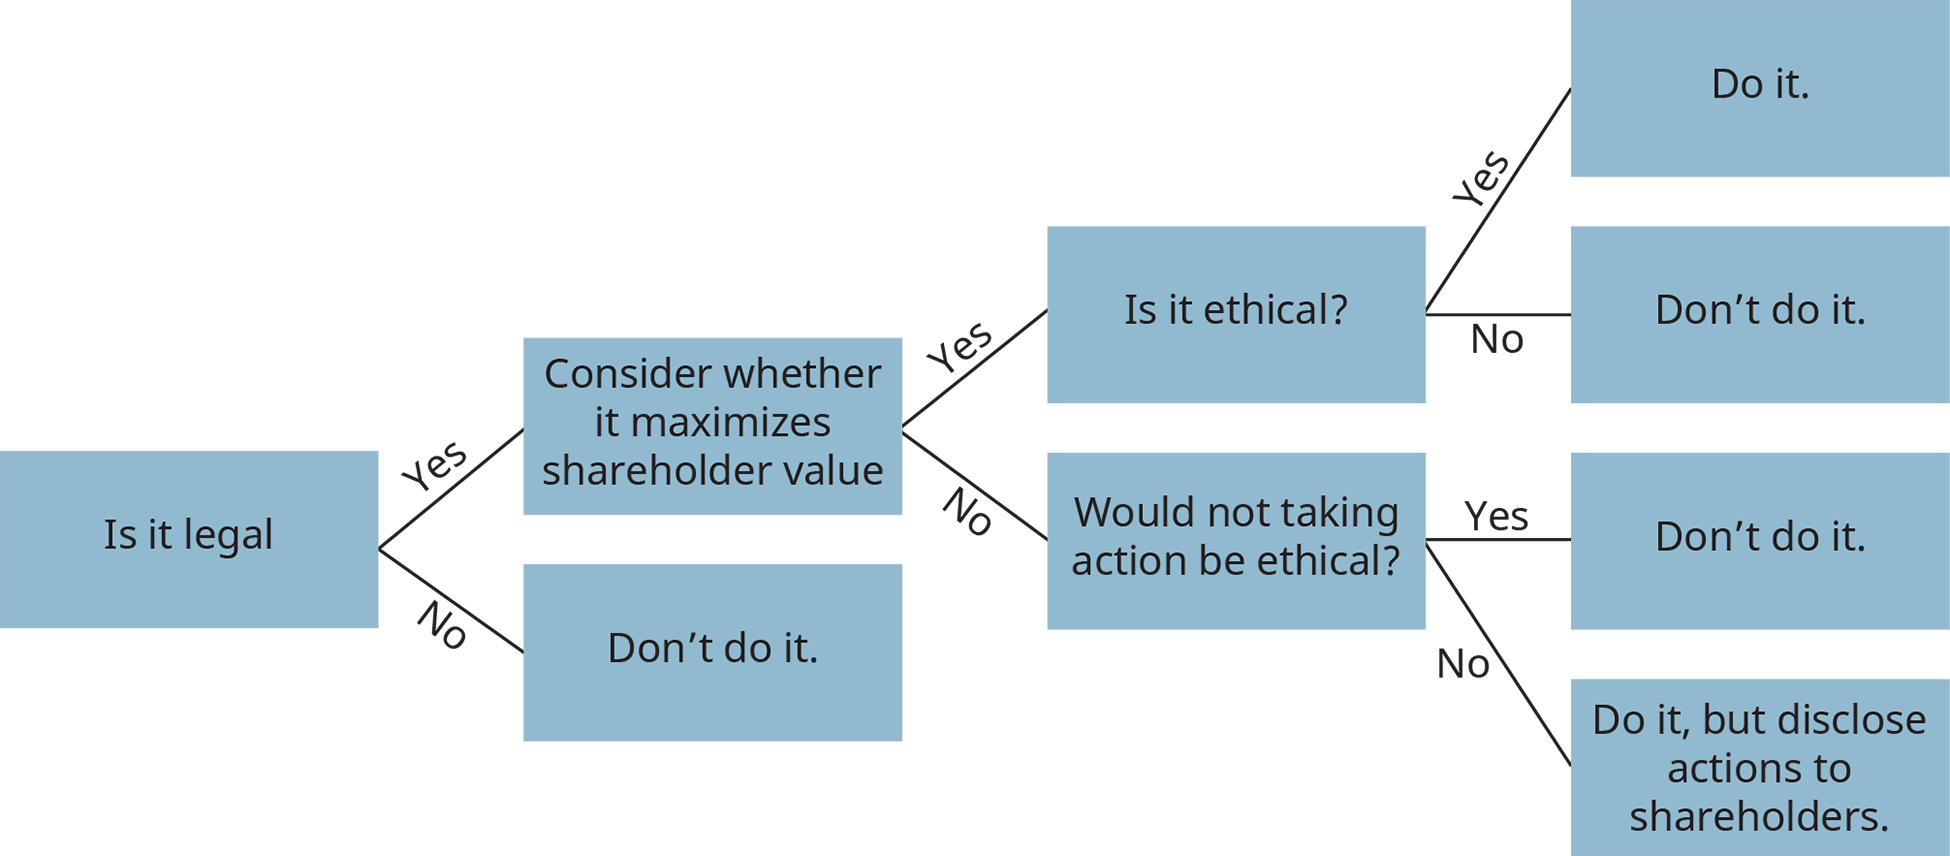 Un diagrama de un árbol de decisiones ilustra el proceso de toma de decisiones éticas.